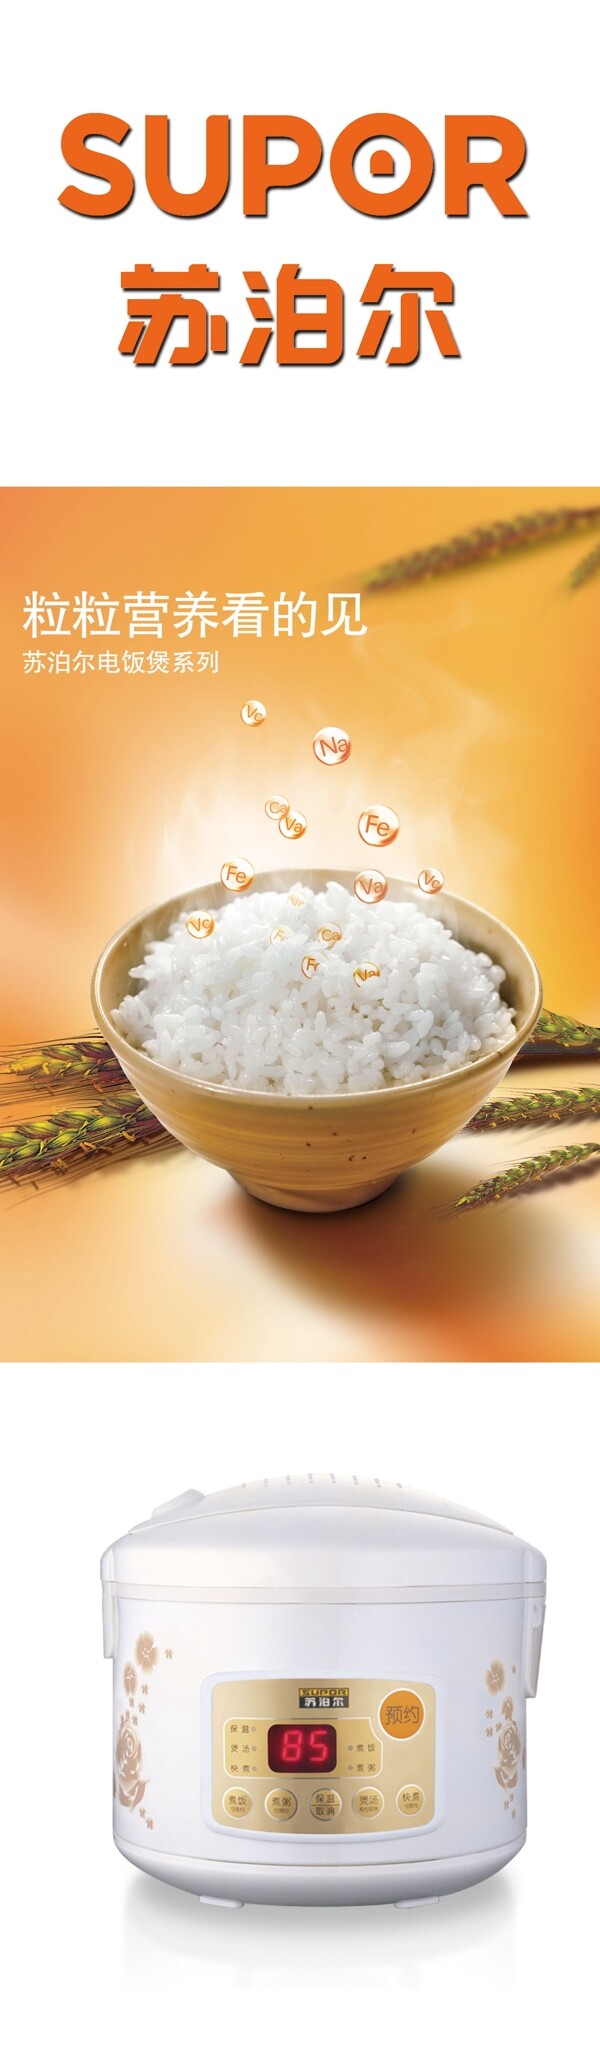 苏泊尔LOGO碗米饭麦穗电饭锅圆圈图片